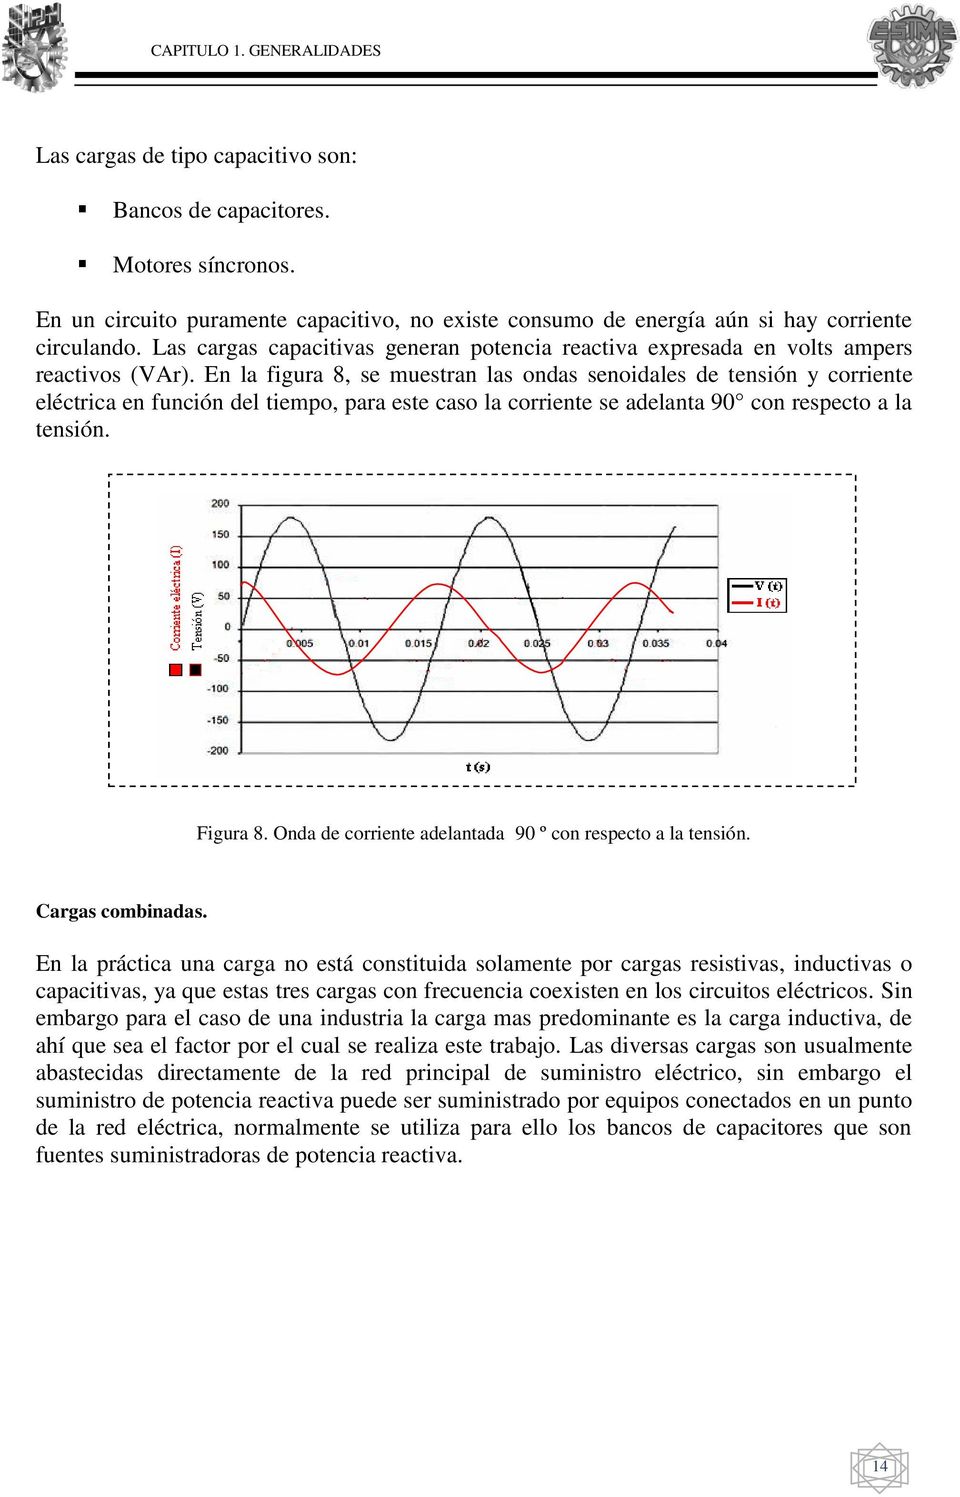 En la figura 8, se muestran las ondas senoidales de tensión y corriente eléctrica en función del tiempo, para este caso la corriente se adelanta 90 con respecto a la tensión. Figura 8.